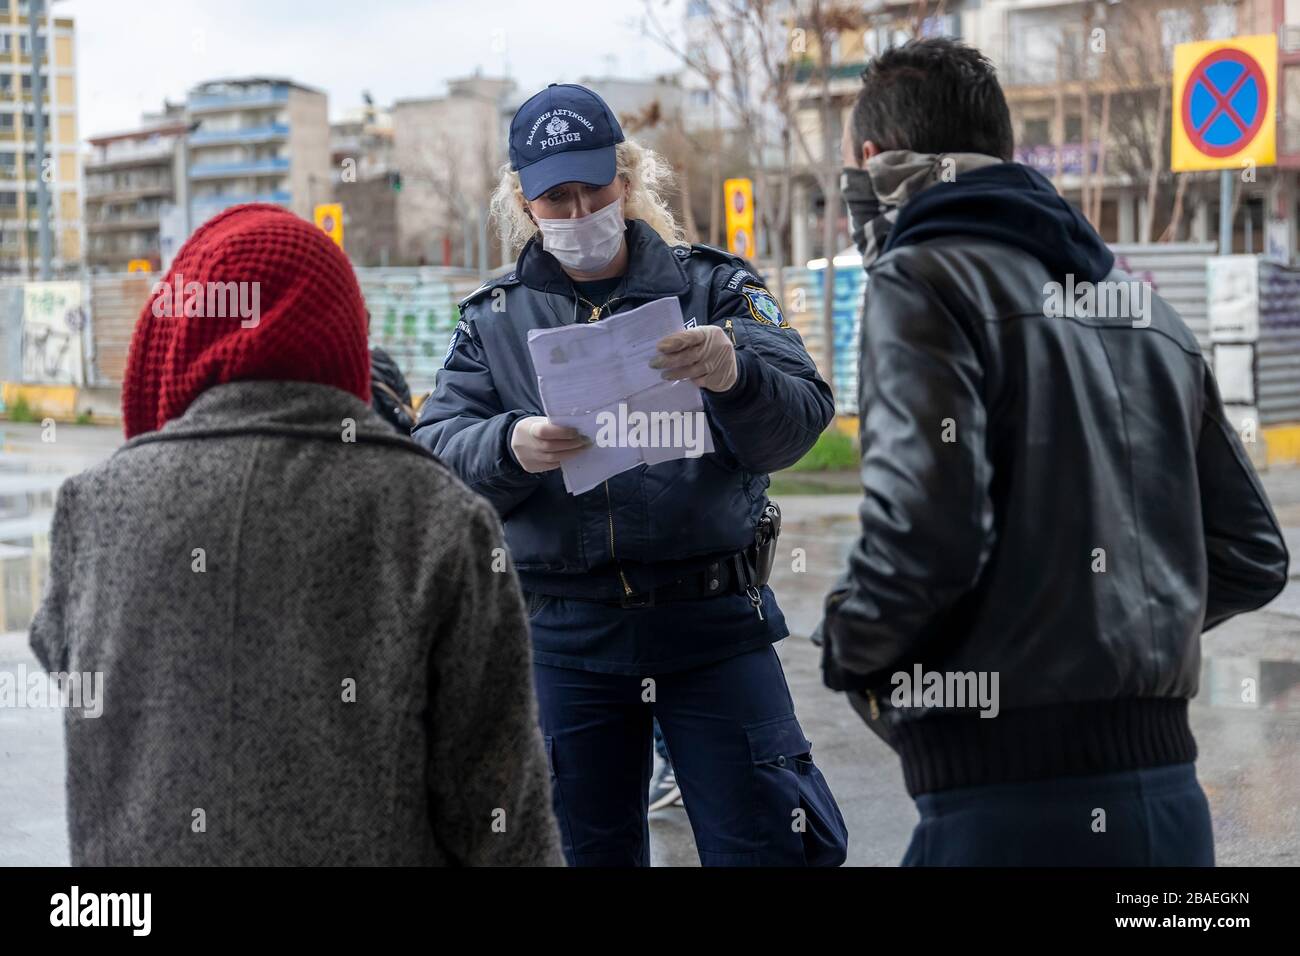 Tesalónica, Grecia - 23 de marzo de 2020: Un oficial de policía revisa los documentos de un ciudadano, mientras el país lucha por controlar la propagación del COVID Foto de stock